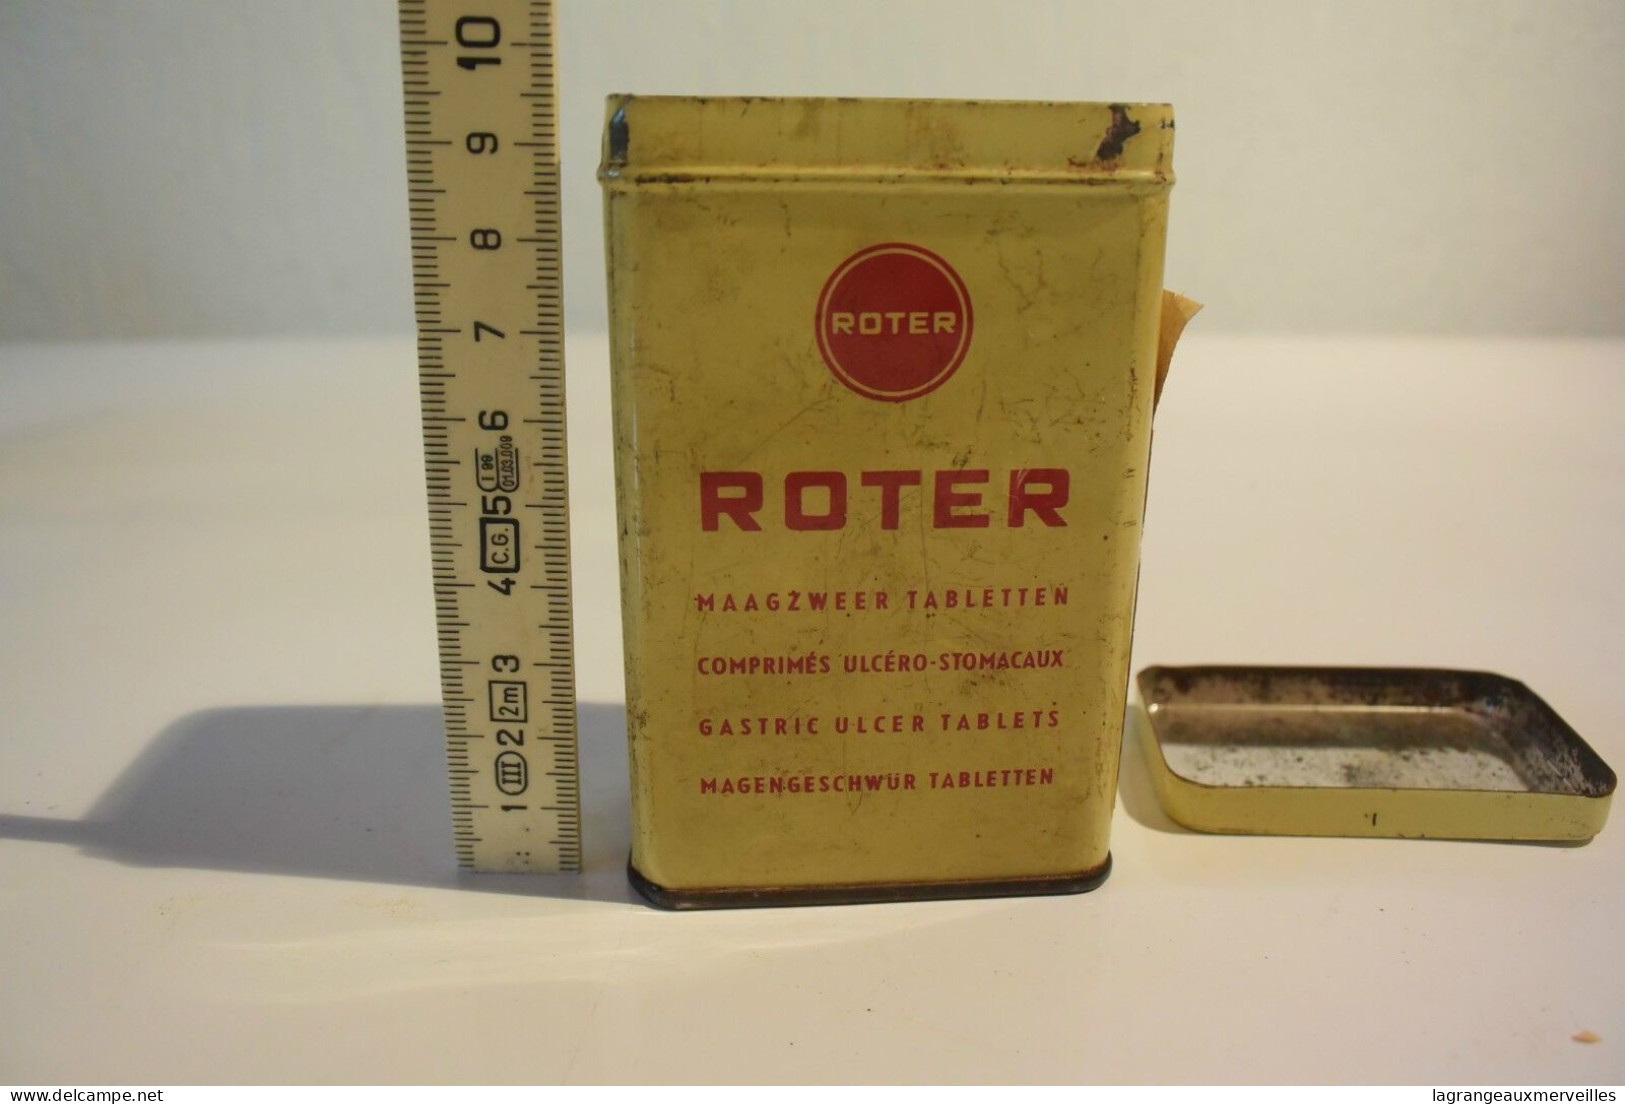 C61 Ancienne boite métallique Roter métal industrie loft vintage 50' 60'